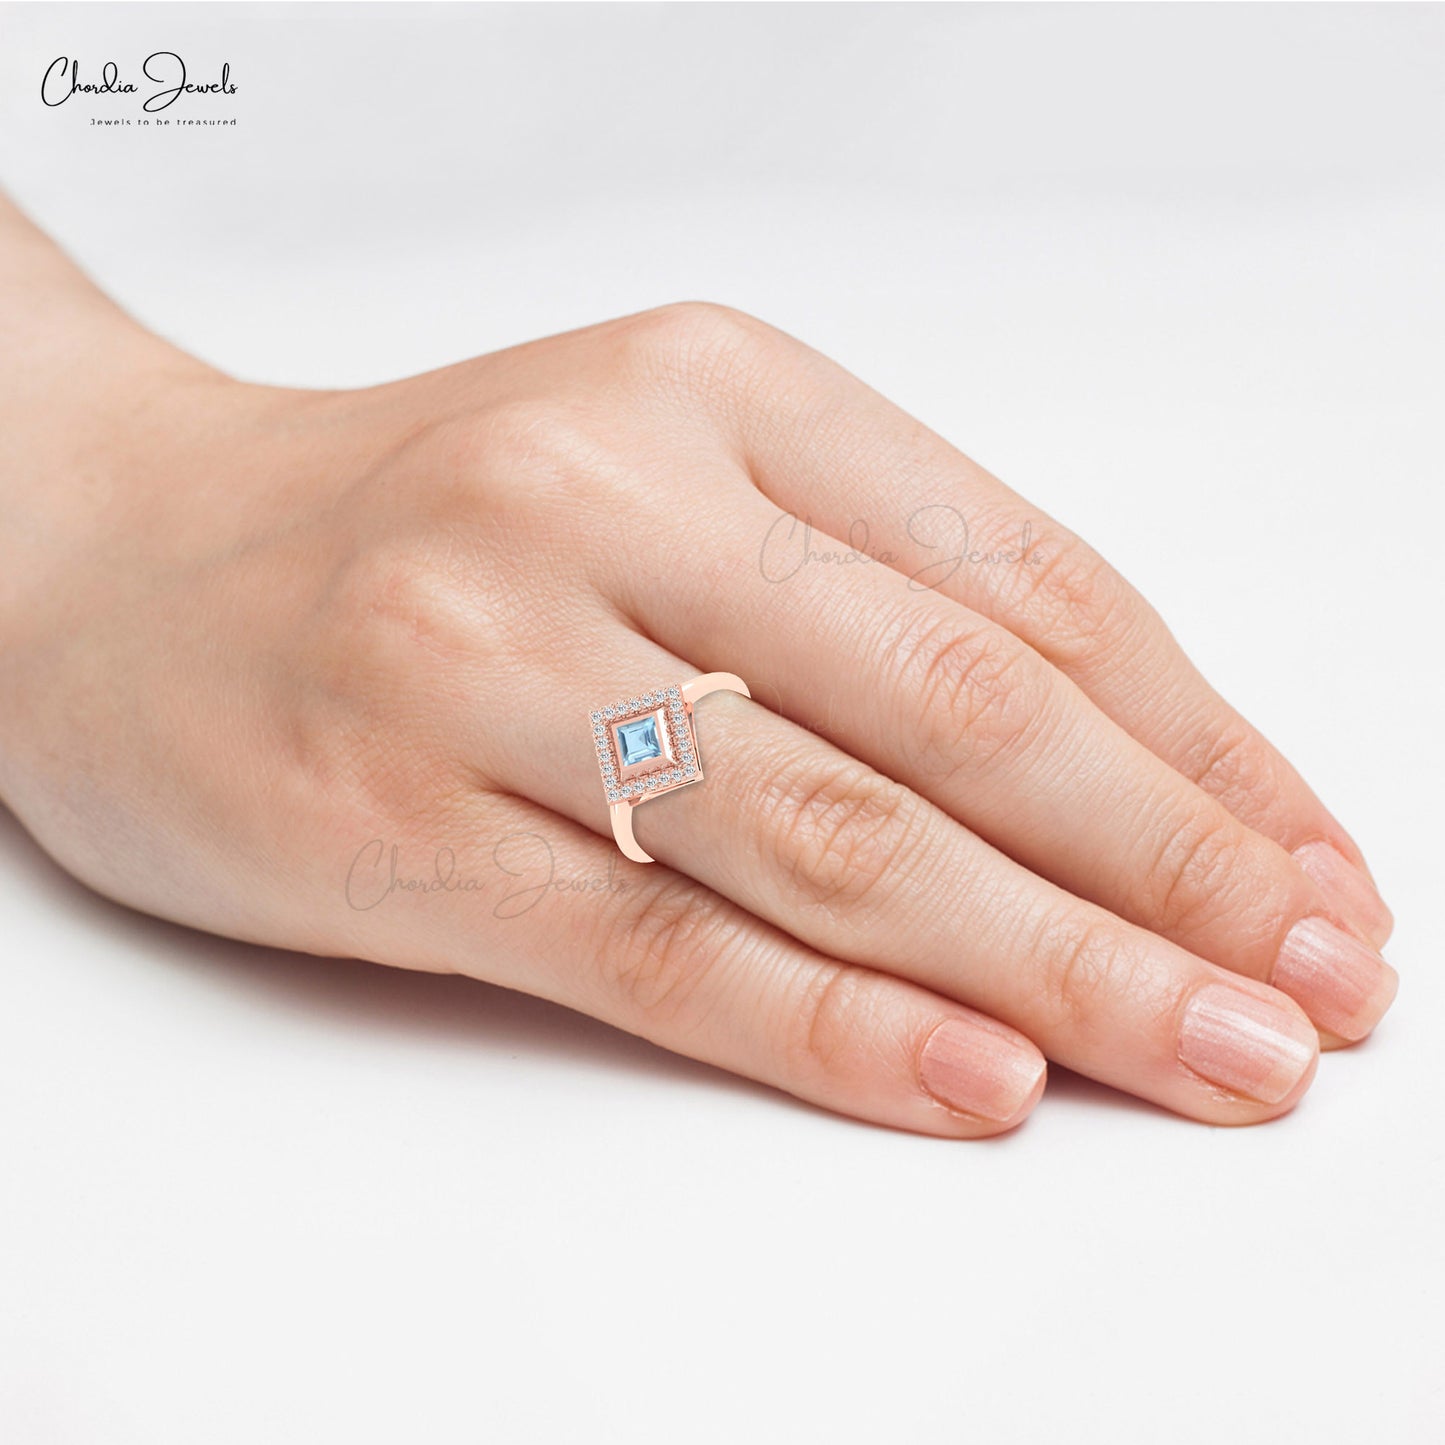 Classic 14k Gold Diamond Halo Engagement Ring Authentic Aquamarine Gemstone Bezel Set Ring